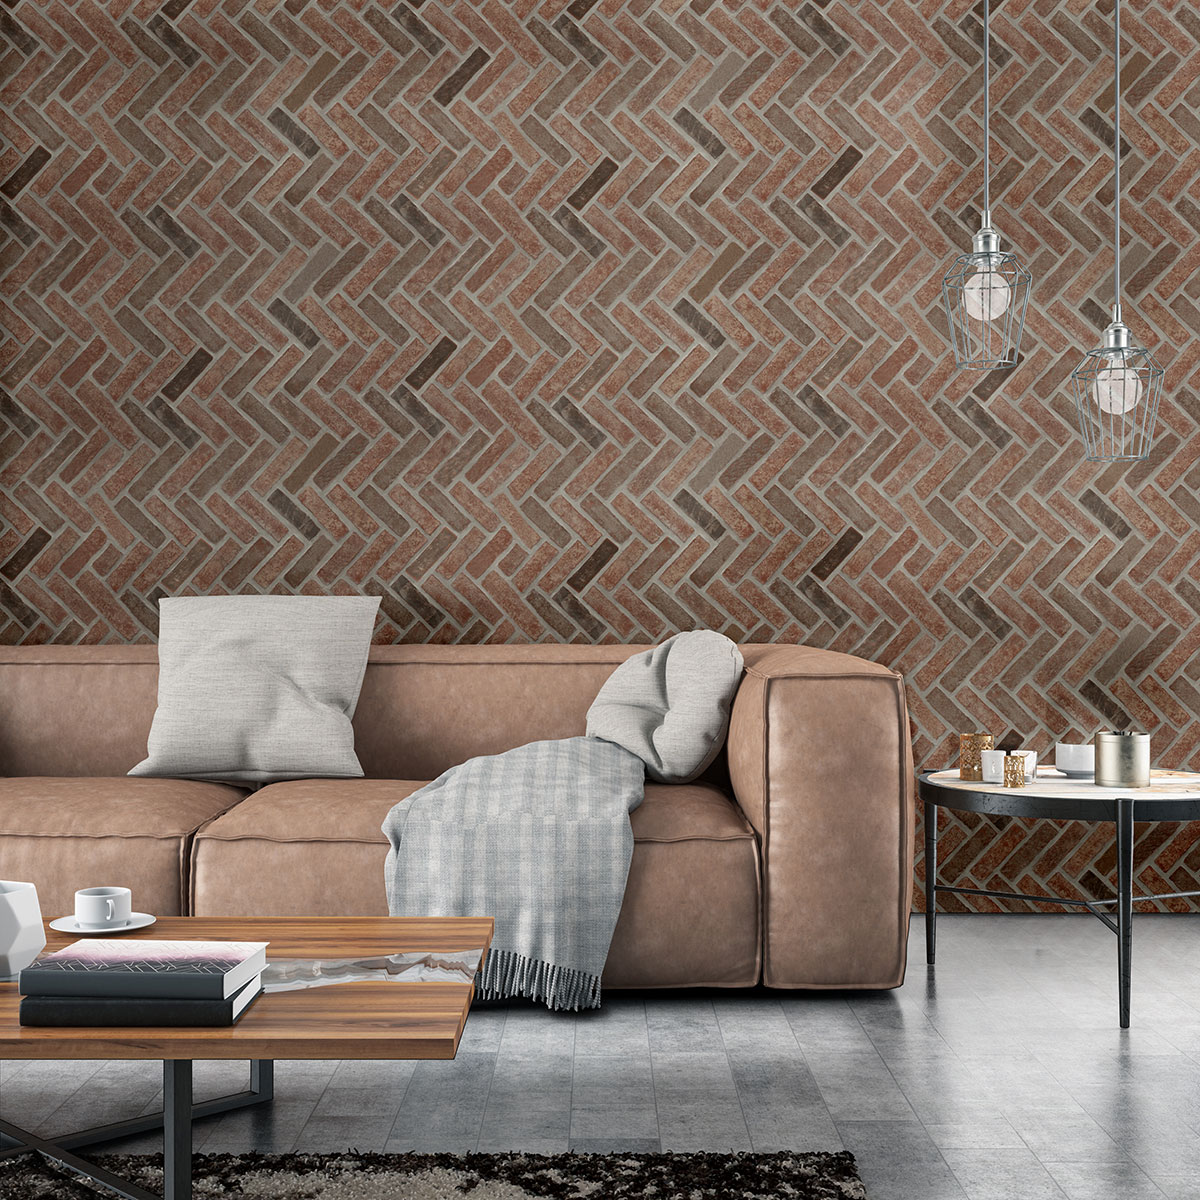 Noble Red Clay Brick Tile - Herringbone wall in living room